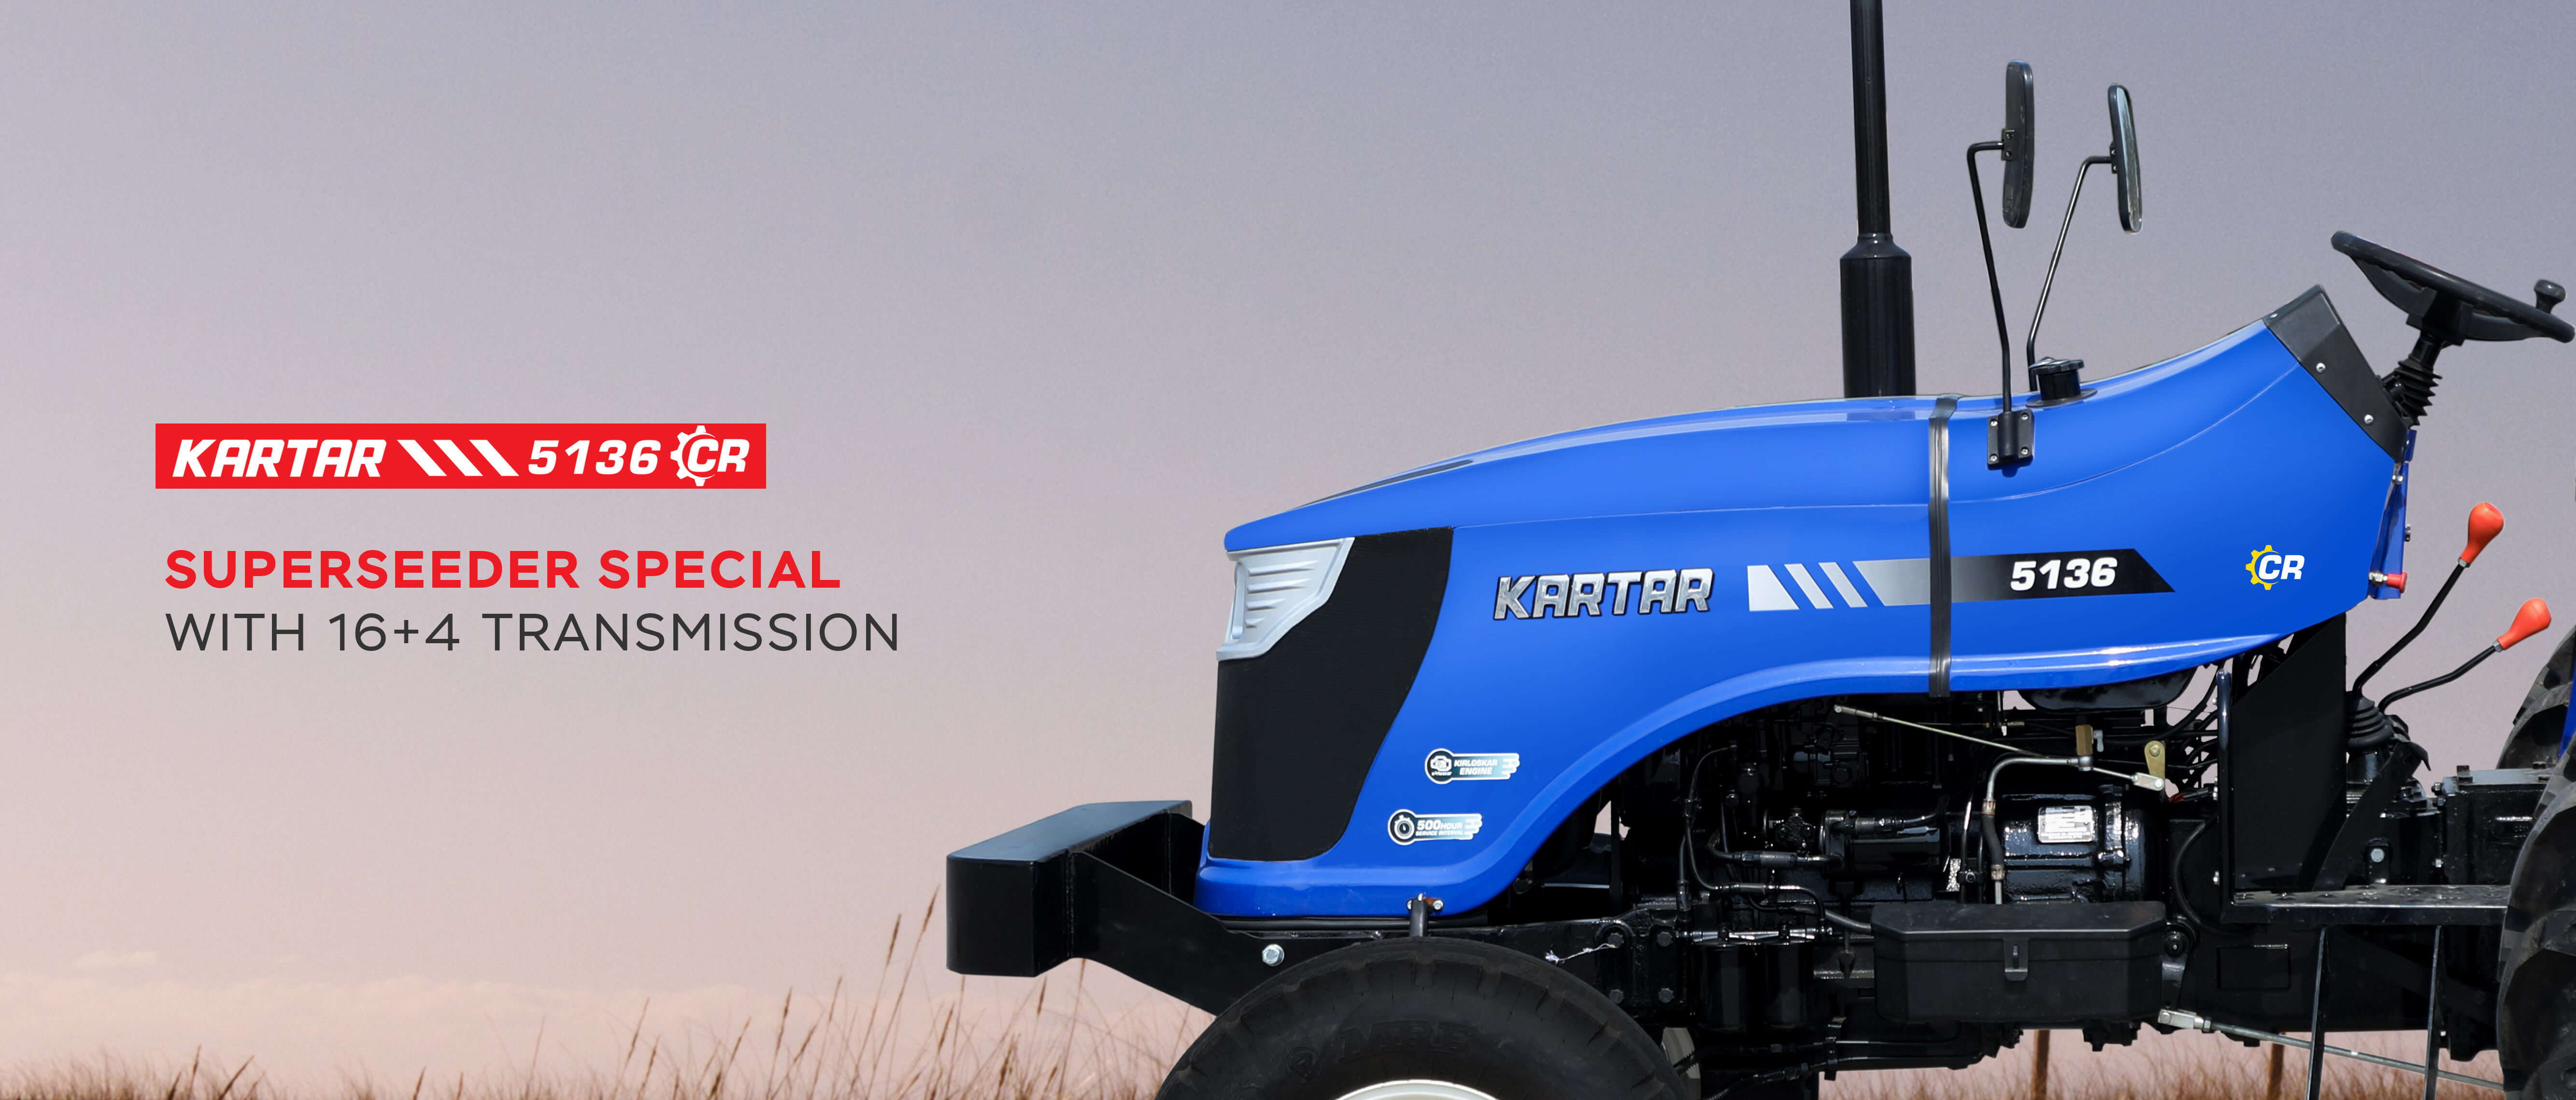 Best Tractor Manufacturers in India | Kartar Tractors